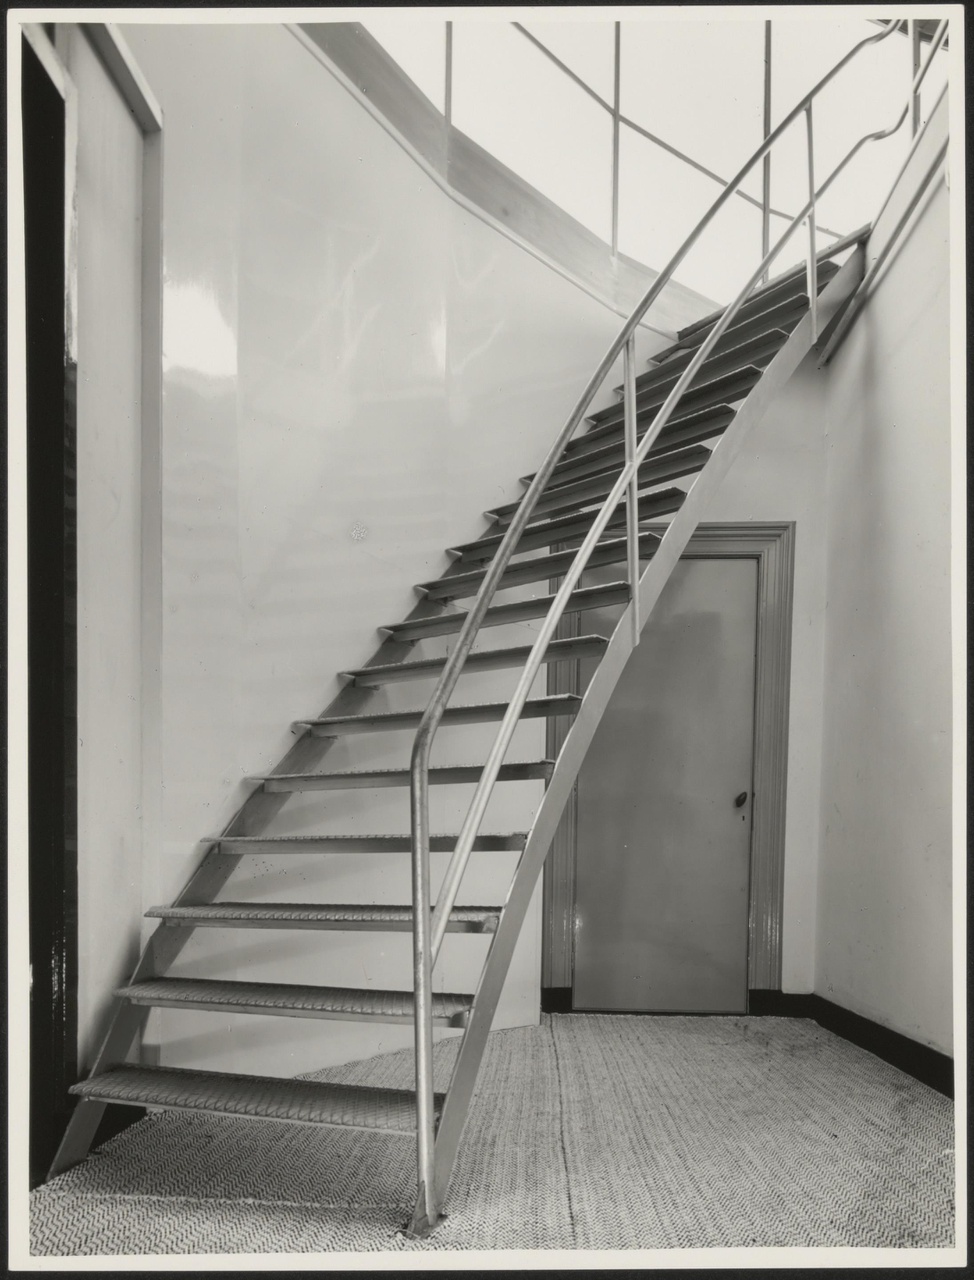 Afbeelding van koepel Metz & Co, trap naar de koepel